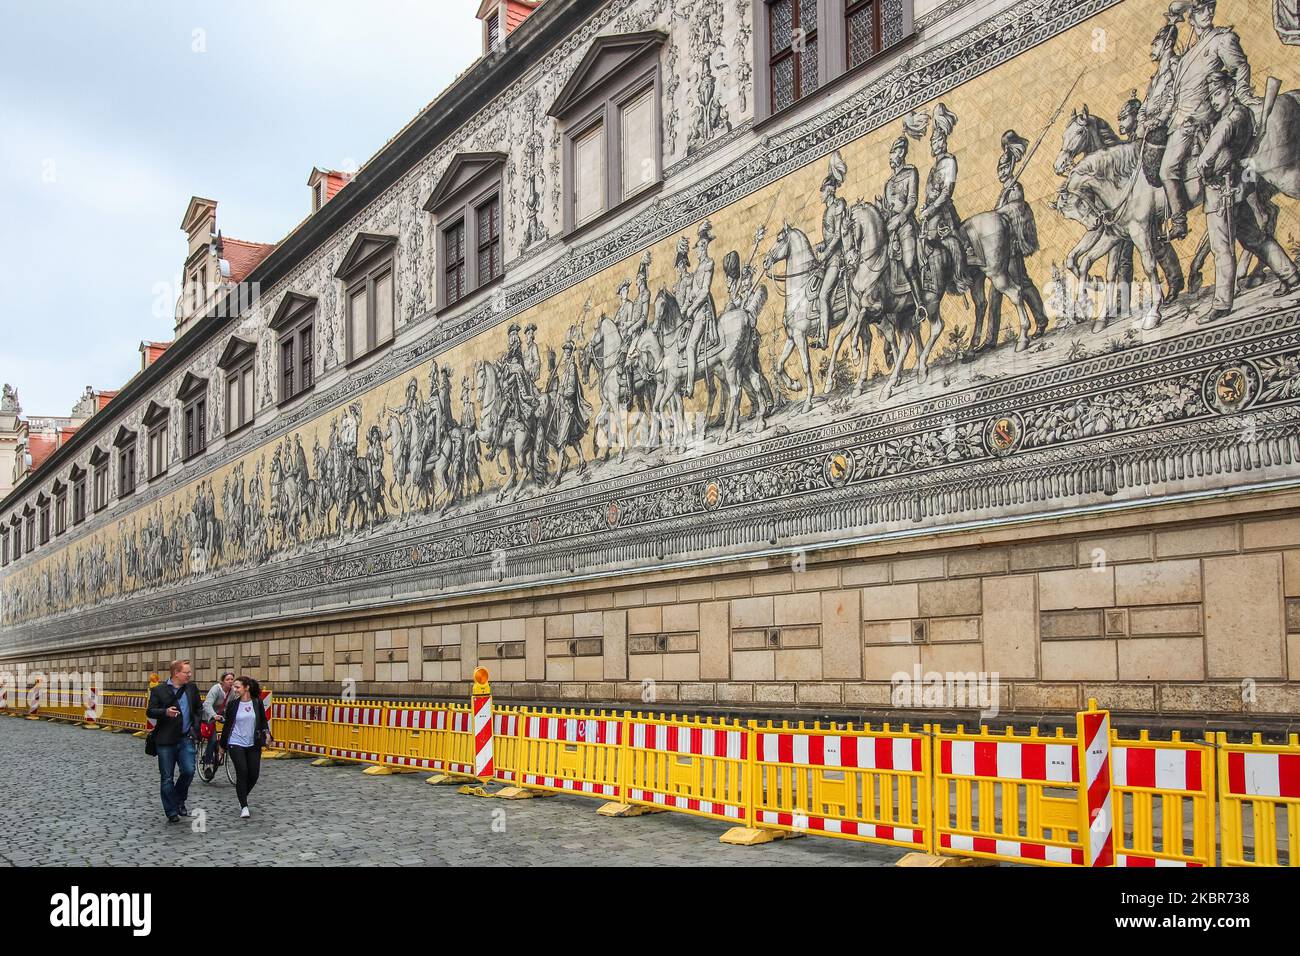 Pocos turistas que visitan casi vacío debido a la falta de turistas relacionada Covid-19, Procesión de Príncipes en el mosaico de la calle Langer Gang se ven en Dresde, Alemania el 11 de junio de 2020 (Foto por Michal Fludra/NurPhoto) Foto de stock